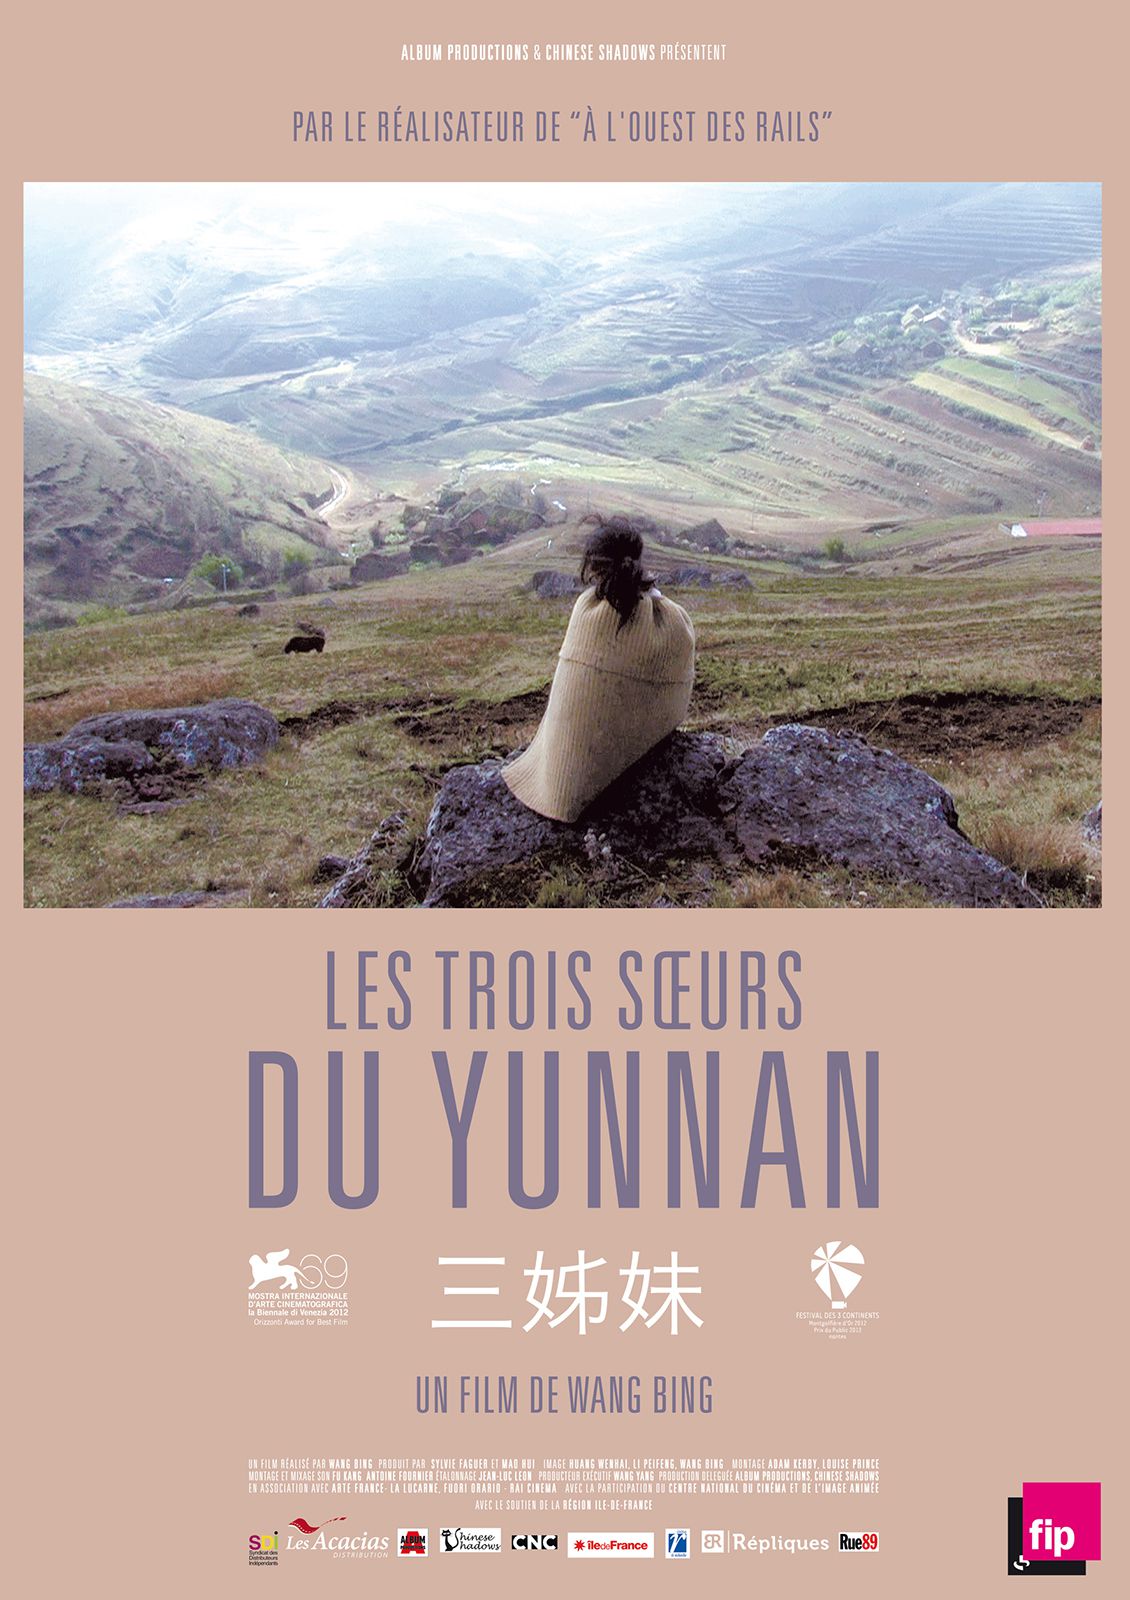 Les Trois Soeurs du Yunnan - Documentaire (2013) streaming VF gratuit complet